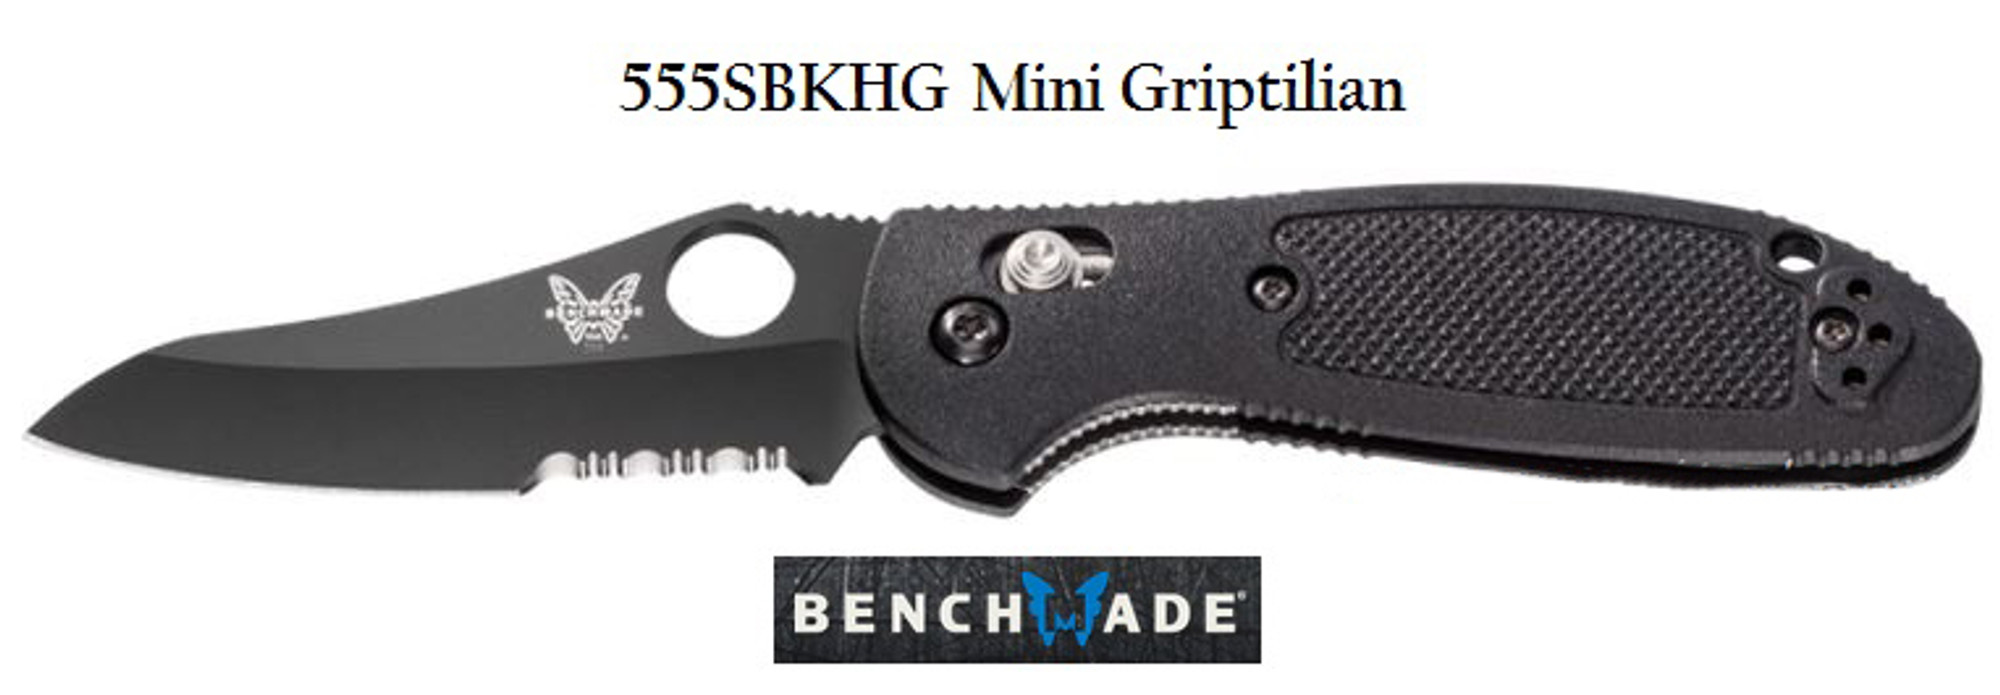 Benchmade 555SBKHG Griptilian Mini Black ComboEdge